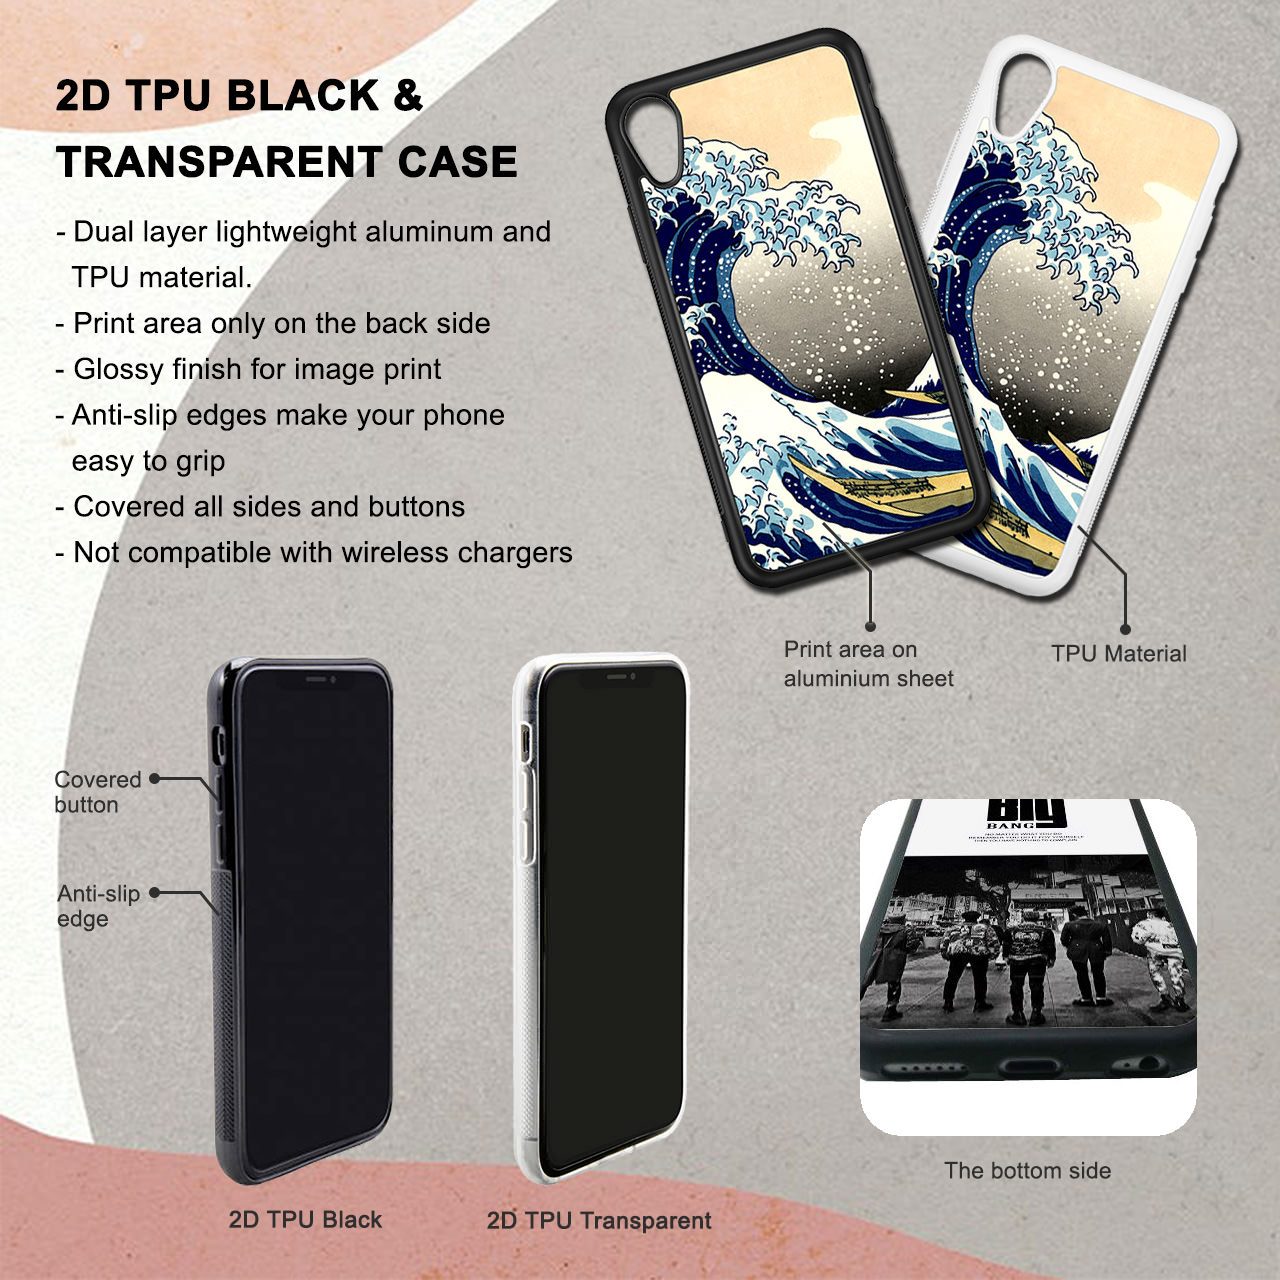 Dauntless Divergent Faction iPhone 6 / 6s Plus Case